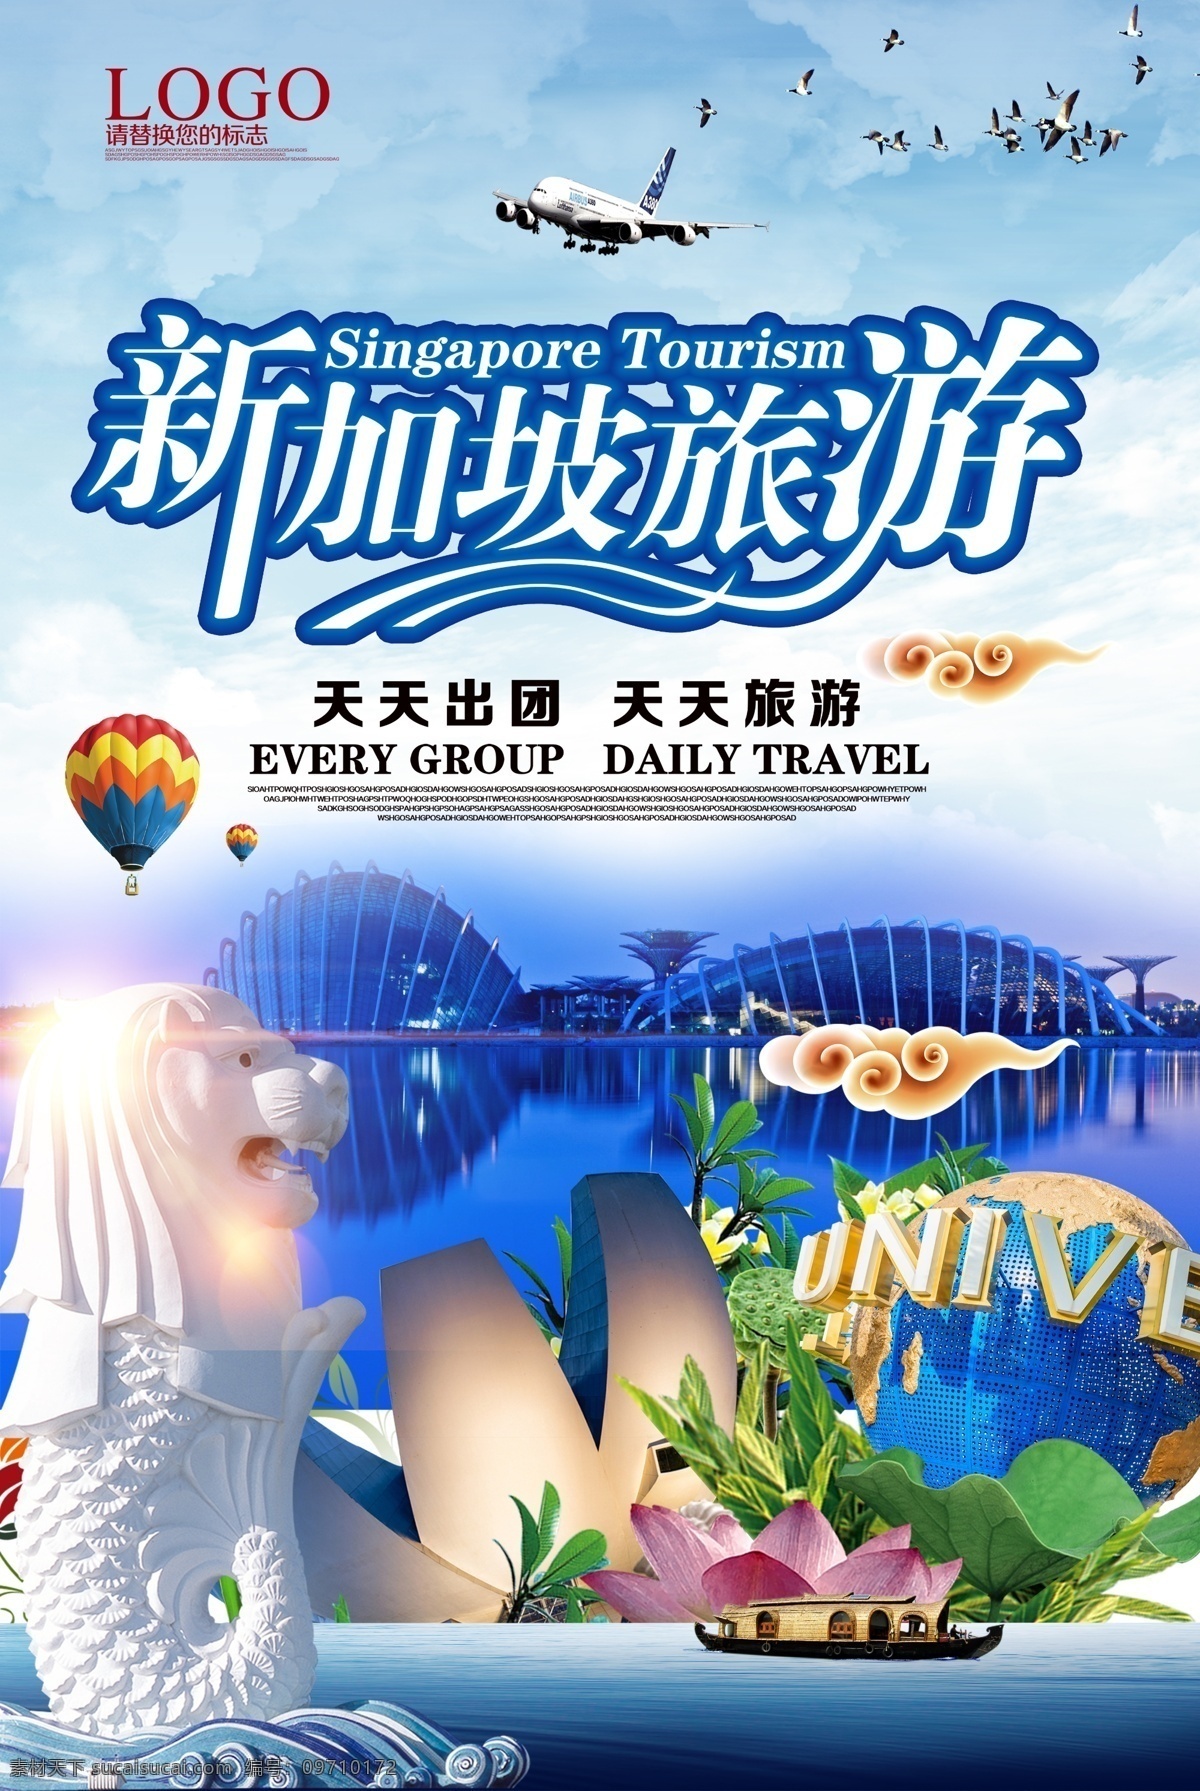 新加坡 旅游 海报 模板 旅游模板 鱼尾狮 标志 建筑 致爱薄荷绿 免费模版 旅游psd